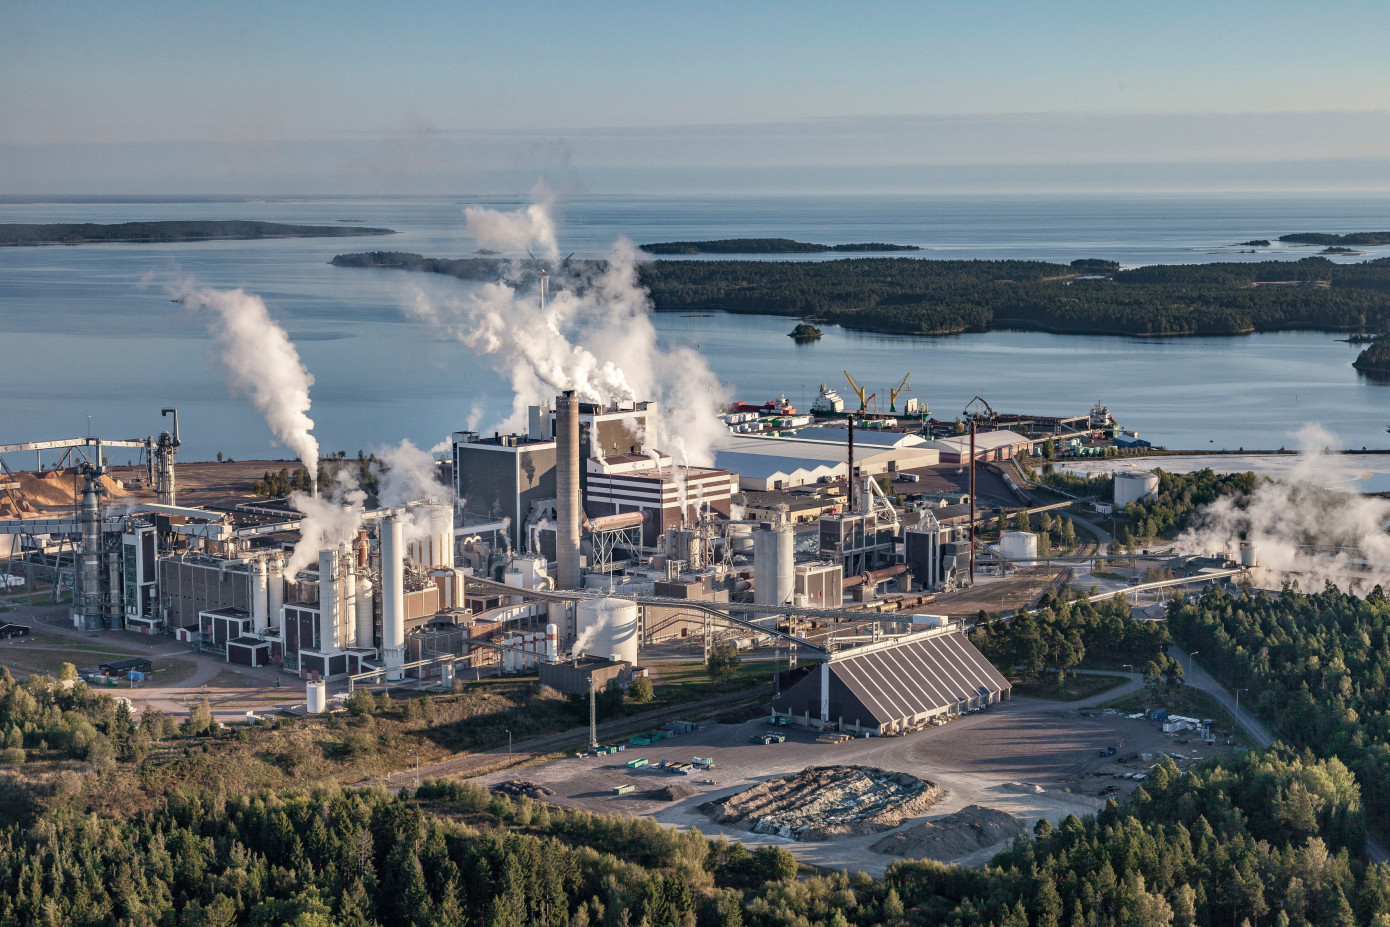 Södra повышает экологичность завода в Швеции